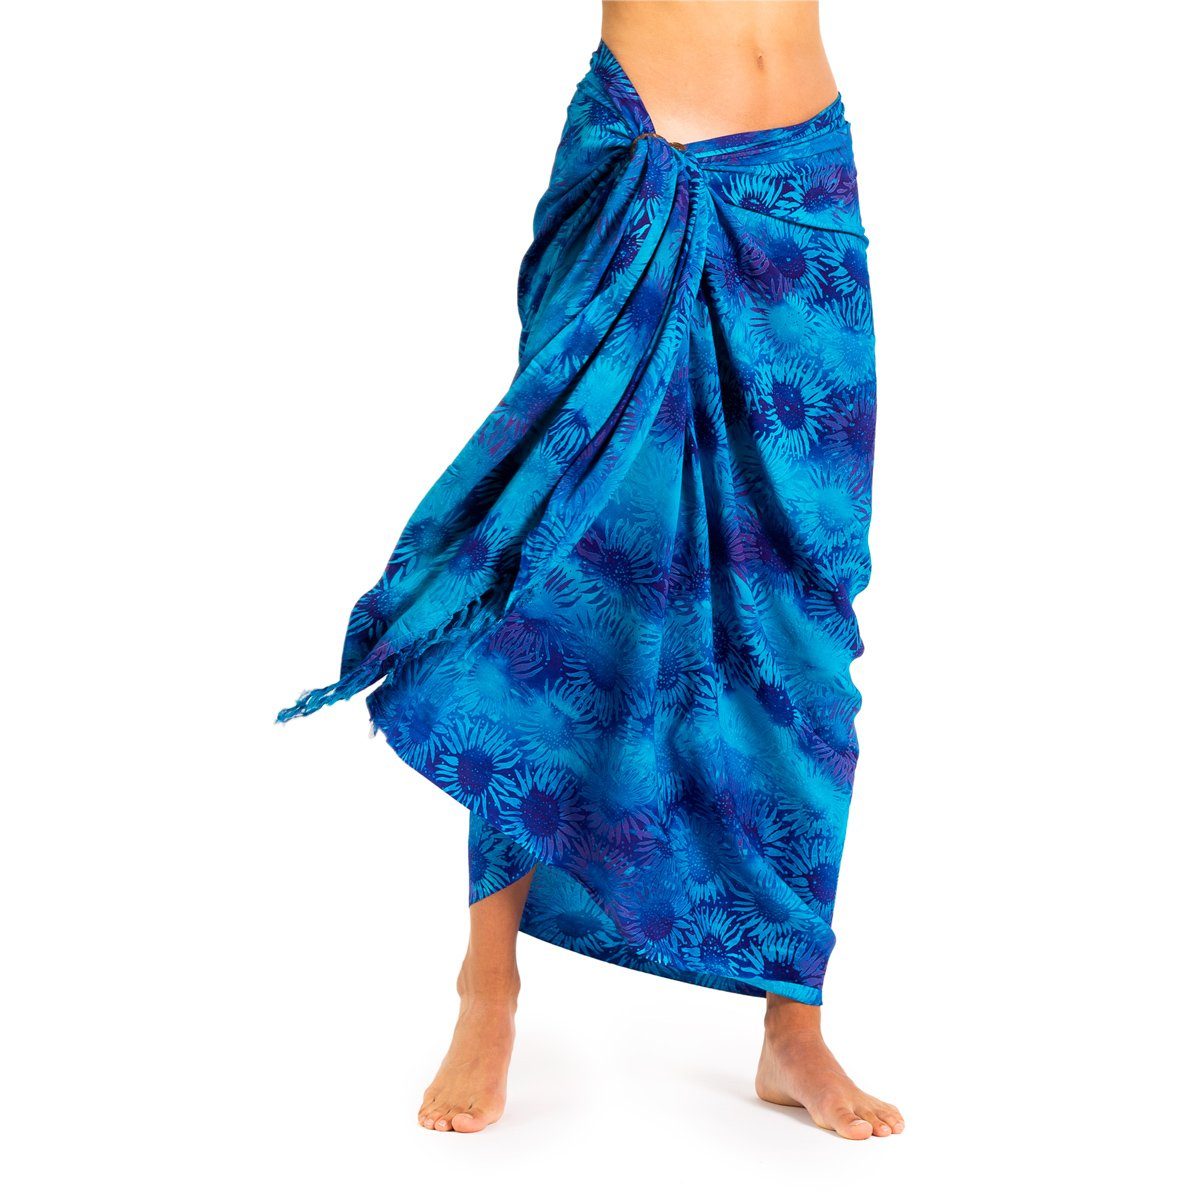 PANASIAM Pareo Sarong Wachsbatik Blautöne aus hochwertiger Viskose Strandtuch, Strandkleid Bikini Cover-up Tuch für den Strand Schultertuch Halstuch B110 blue flower